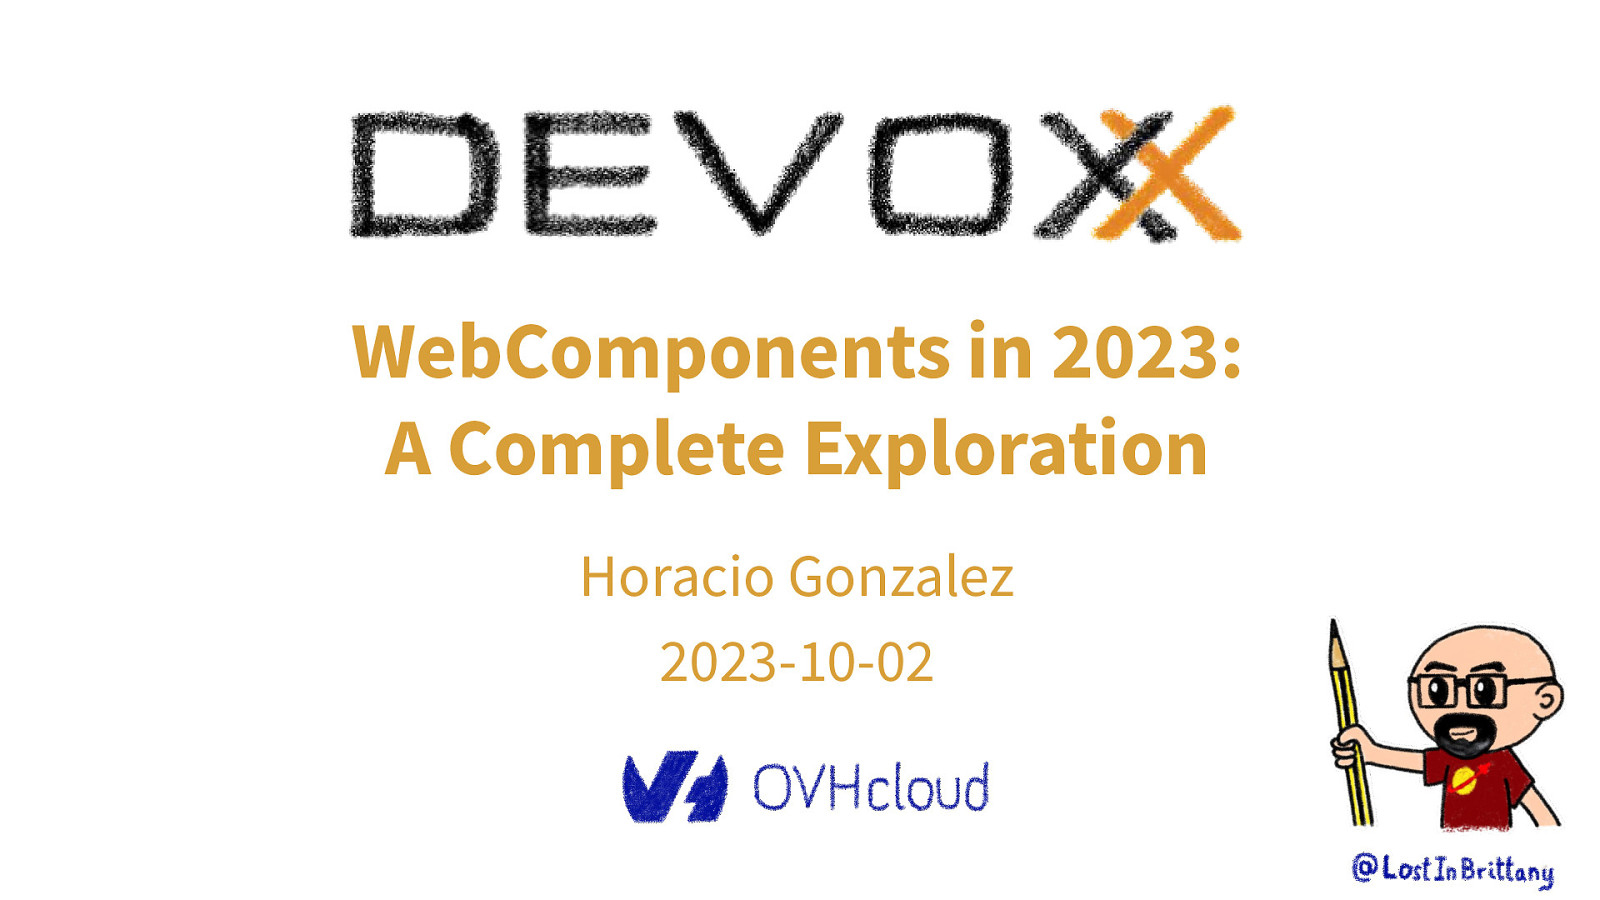 WebComponents in 2023: A Comprehensive Exploration by Horacio Gonzalez